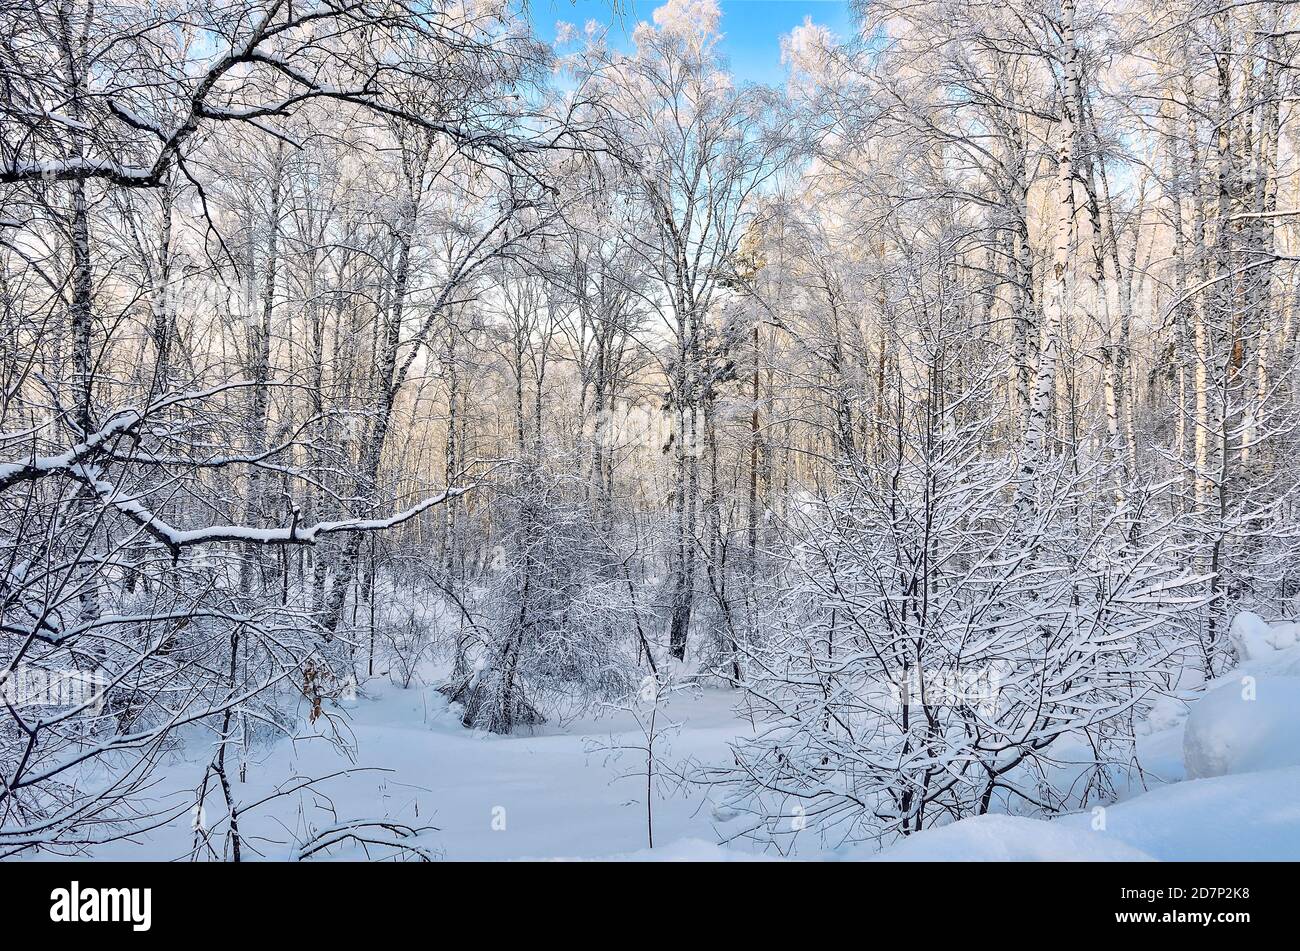 Gefrorene Birkenwald mit frischem weichem Schnee und Raureif an sonnigen Tag bedeckt mit blauer Himmel - Sonnenschein Winterlandschaft. Schneeflocken ein Stockfoto